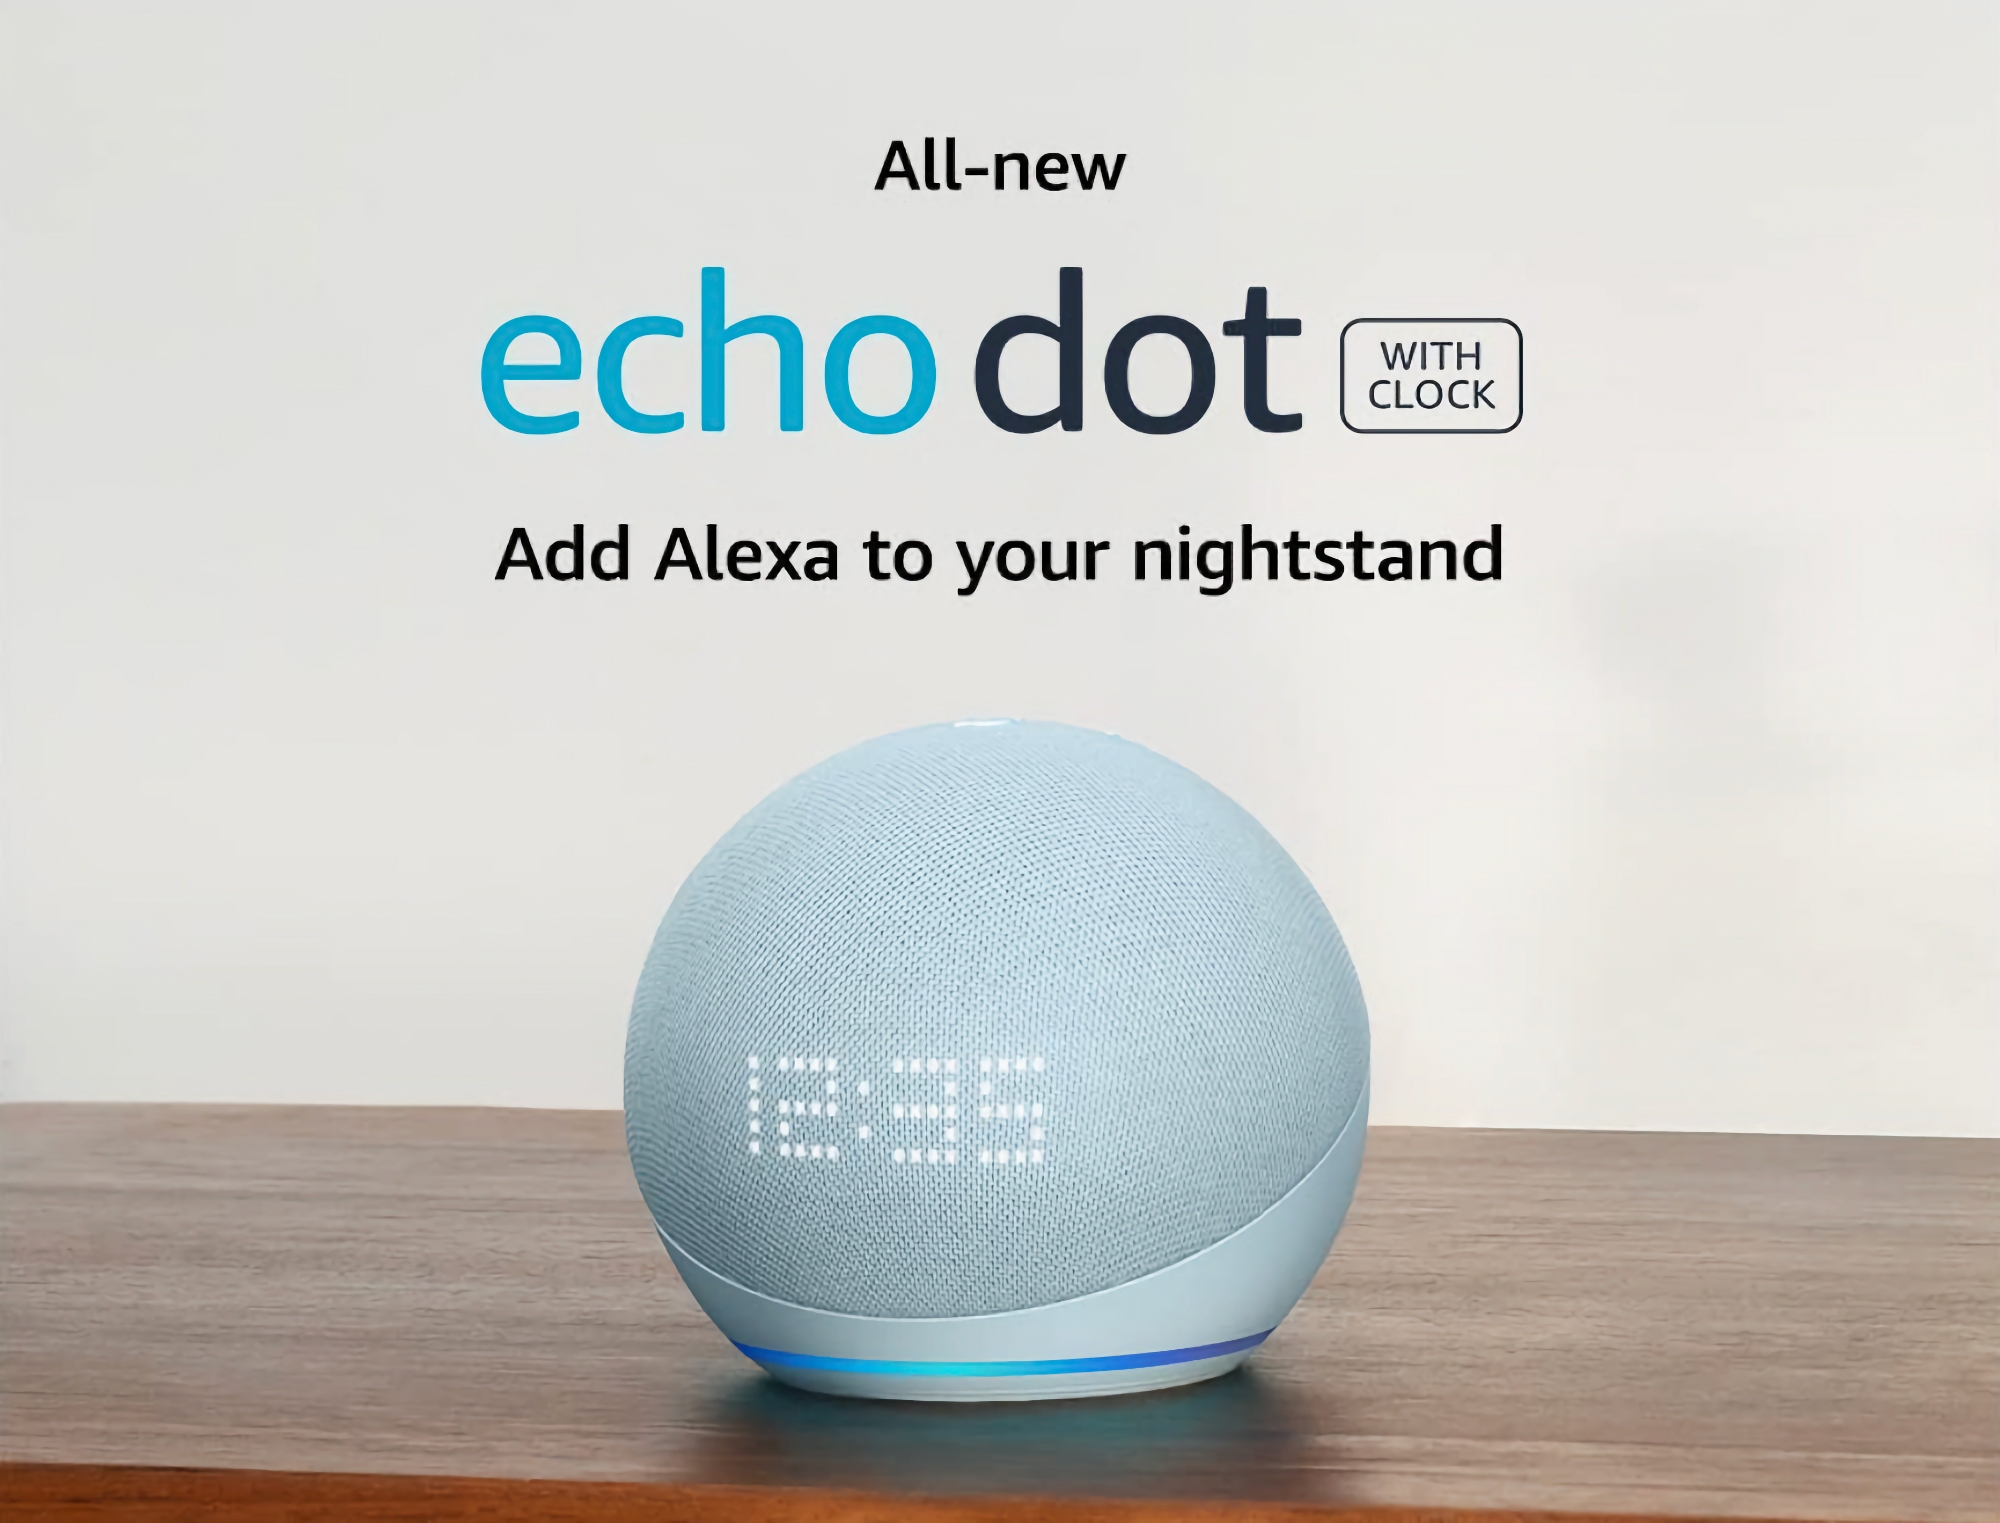 Amazon vende l'altoparlante intelligente Echo Dot di quinta generazione con sensore di movimento, orologio incorporato e supporto Alexa a 39 dollari (20 dollari di sconto)